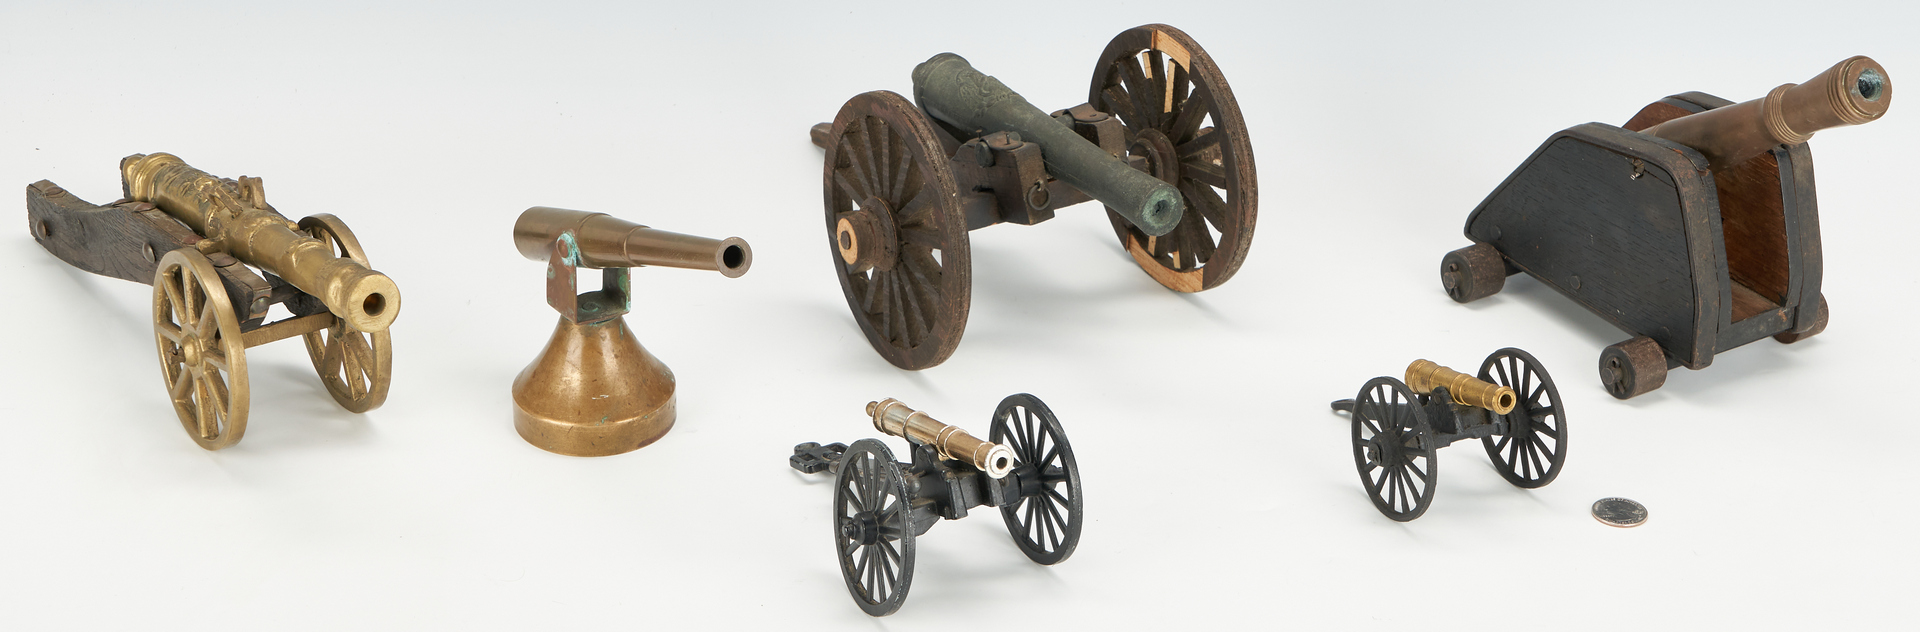 Lot 1014: Six (6) European Miniature Bronze & Brass Cannons